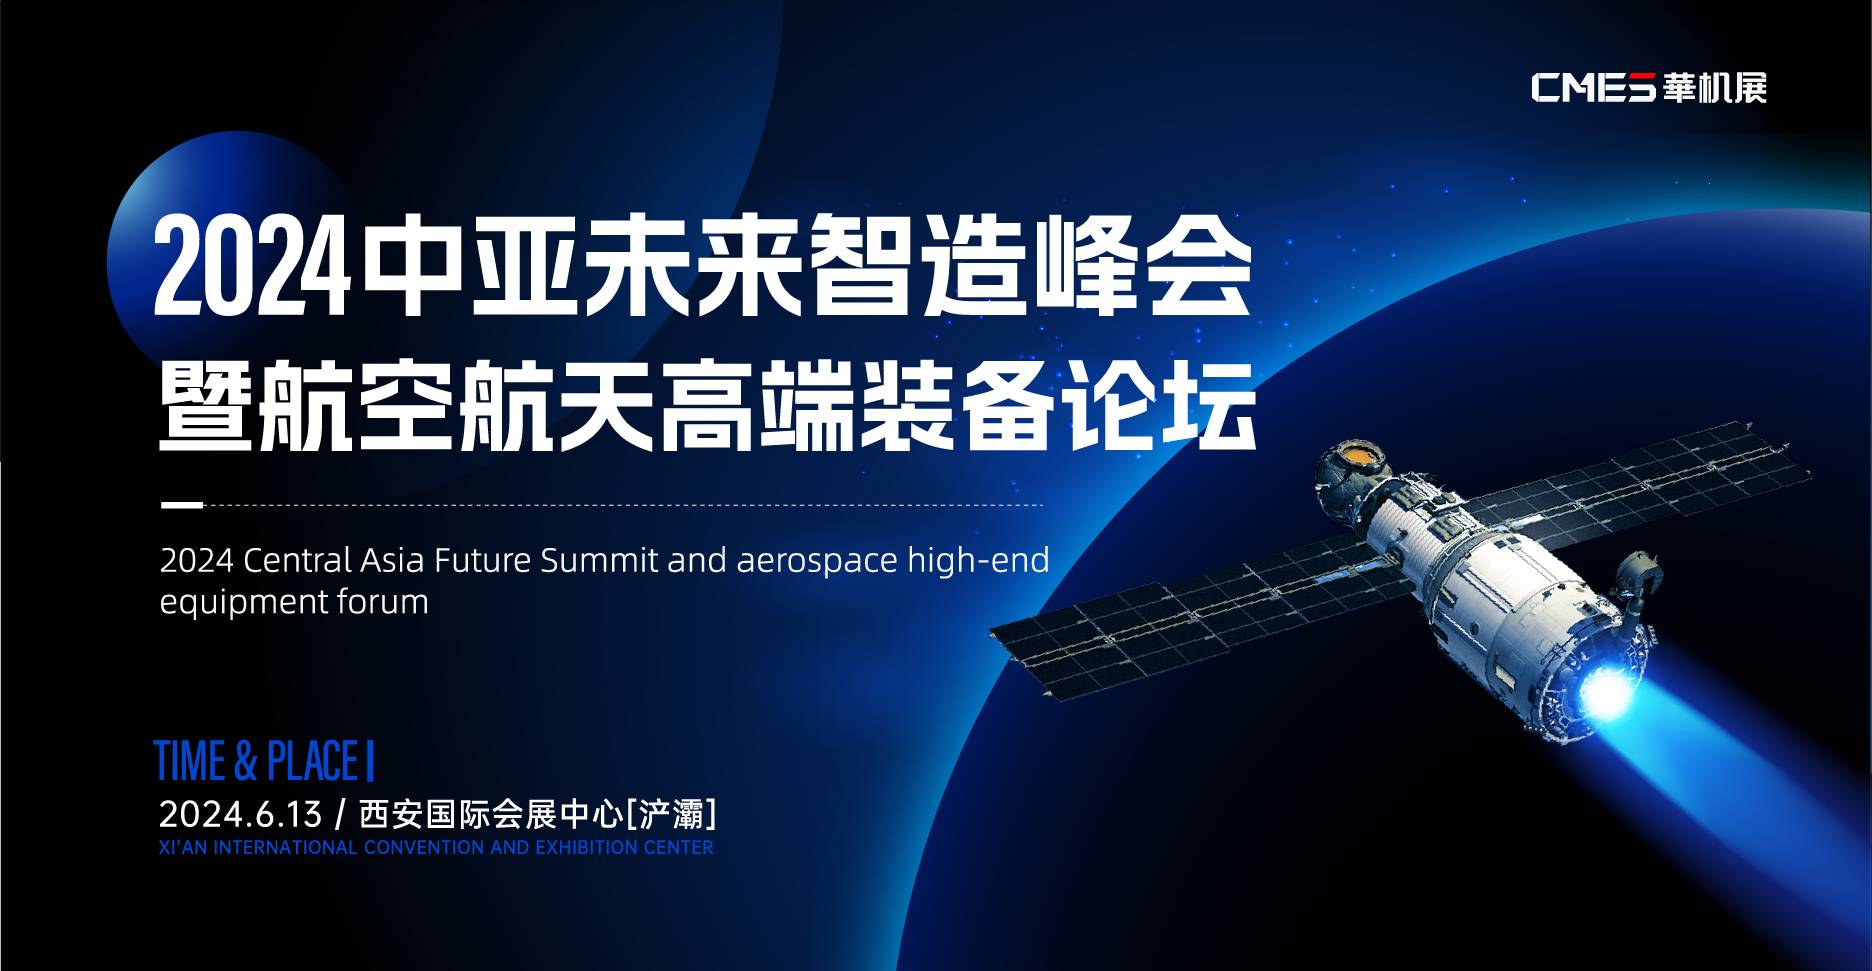 2024中亚未来智造峰会暨航空航天高端装备论坛